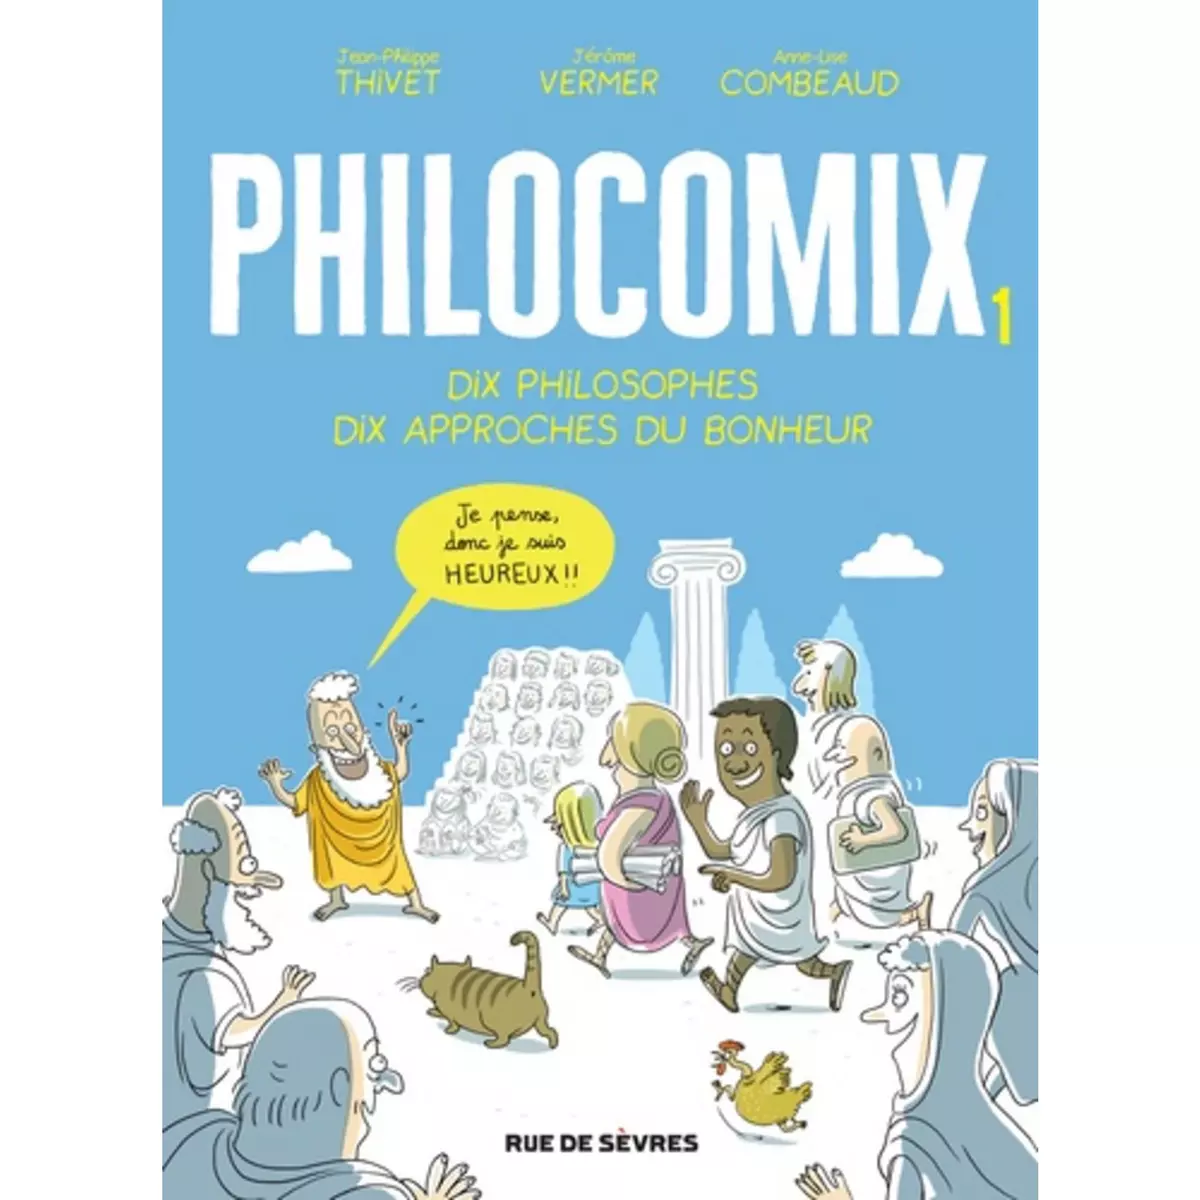  PHILOCOMIX TOME 1 : DIX PHILOSOPHES, DIX APPROCHES DU BONHEUR. EDITION REVUE ET AUGMENTEE, Thivet Jean-Philippe